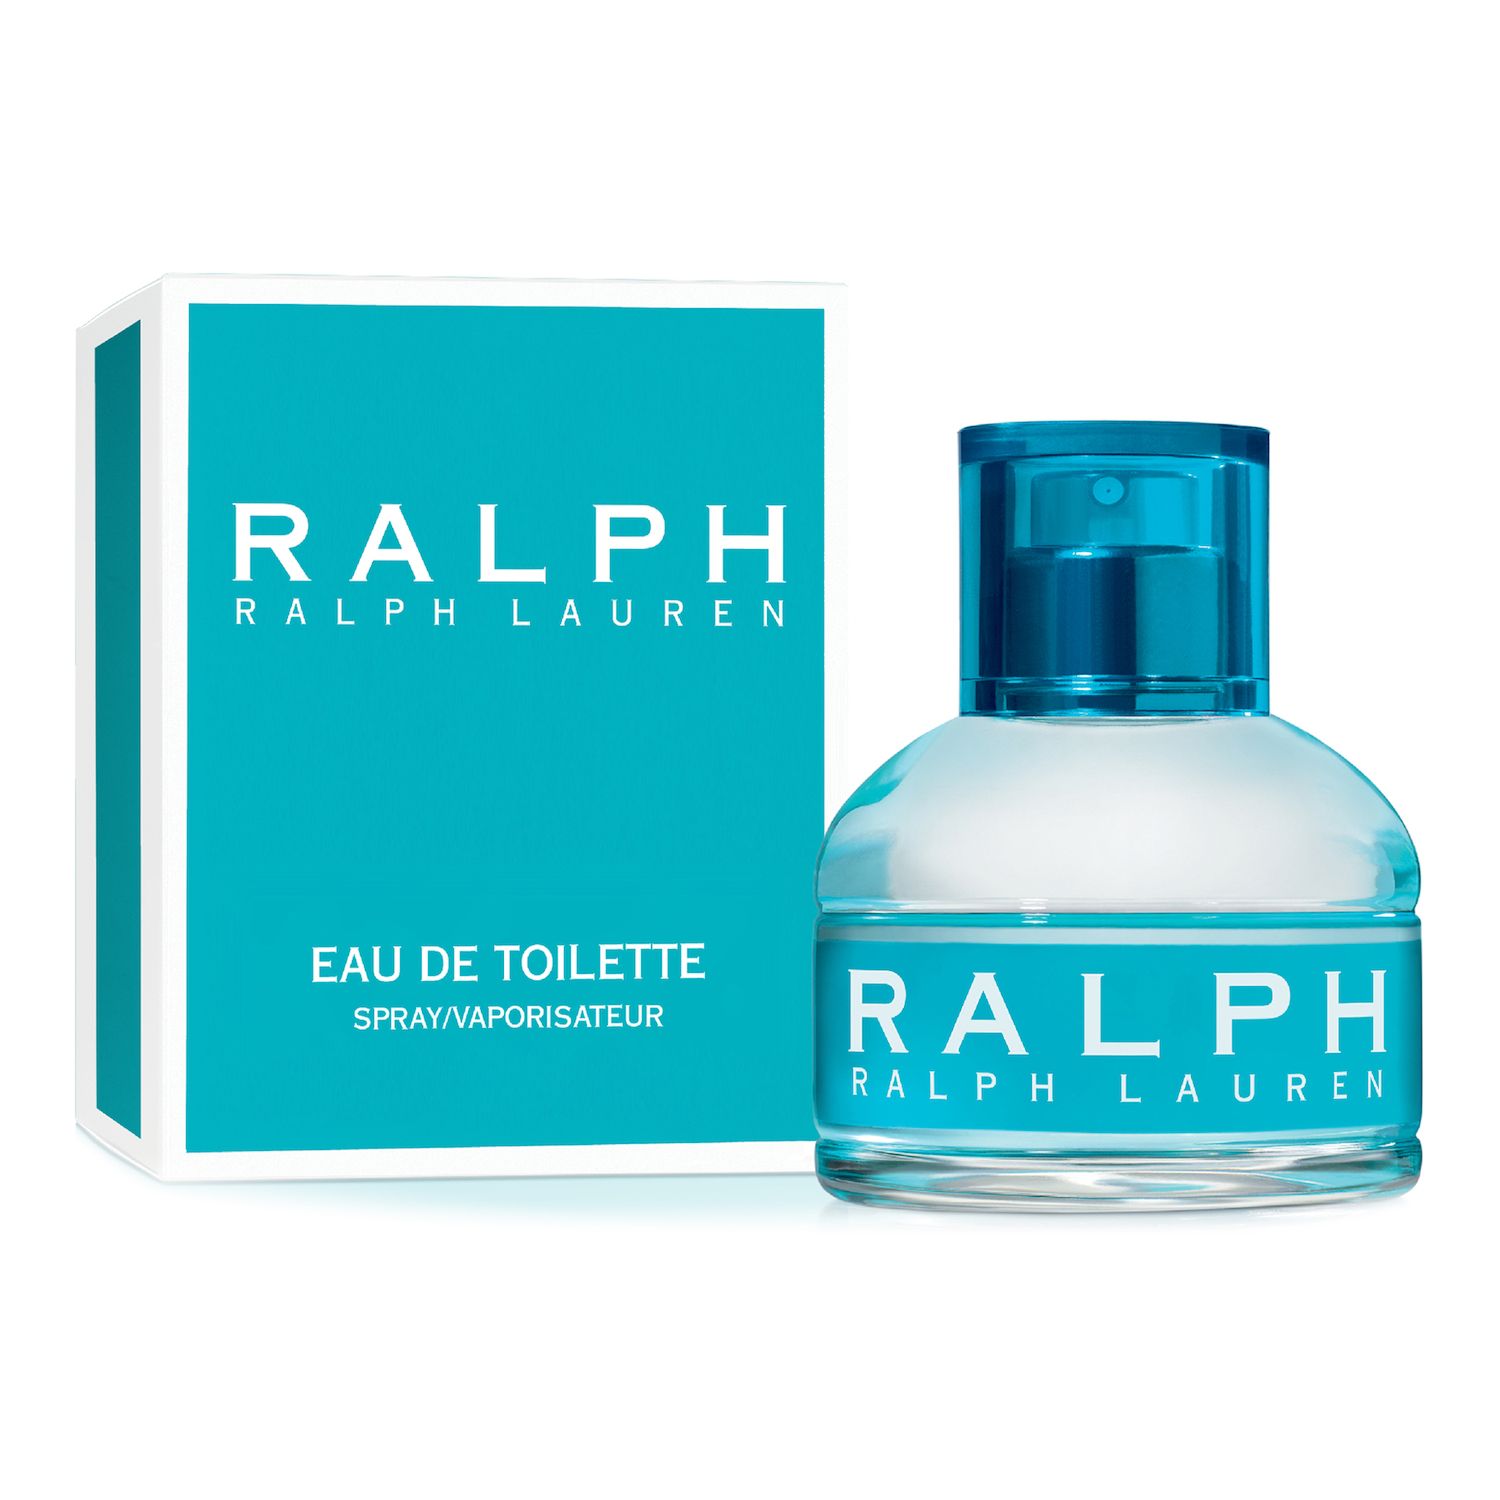 ralph lauren blue perfume kohls